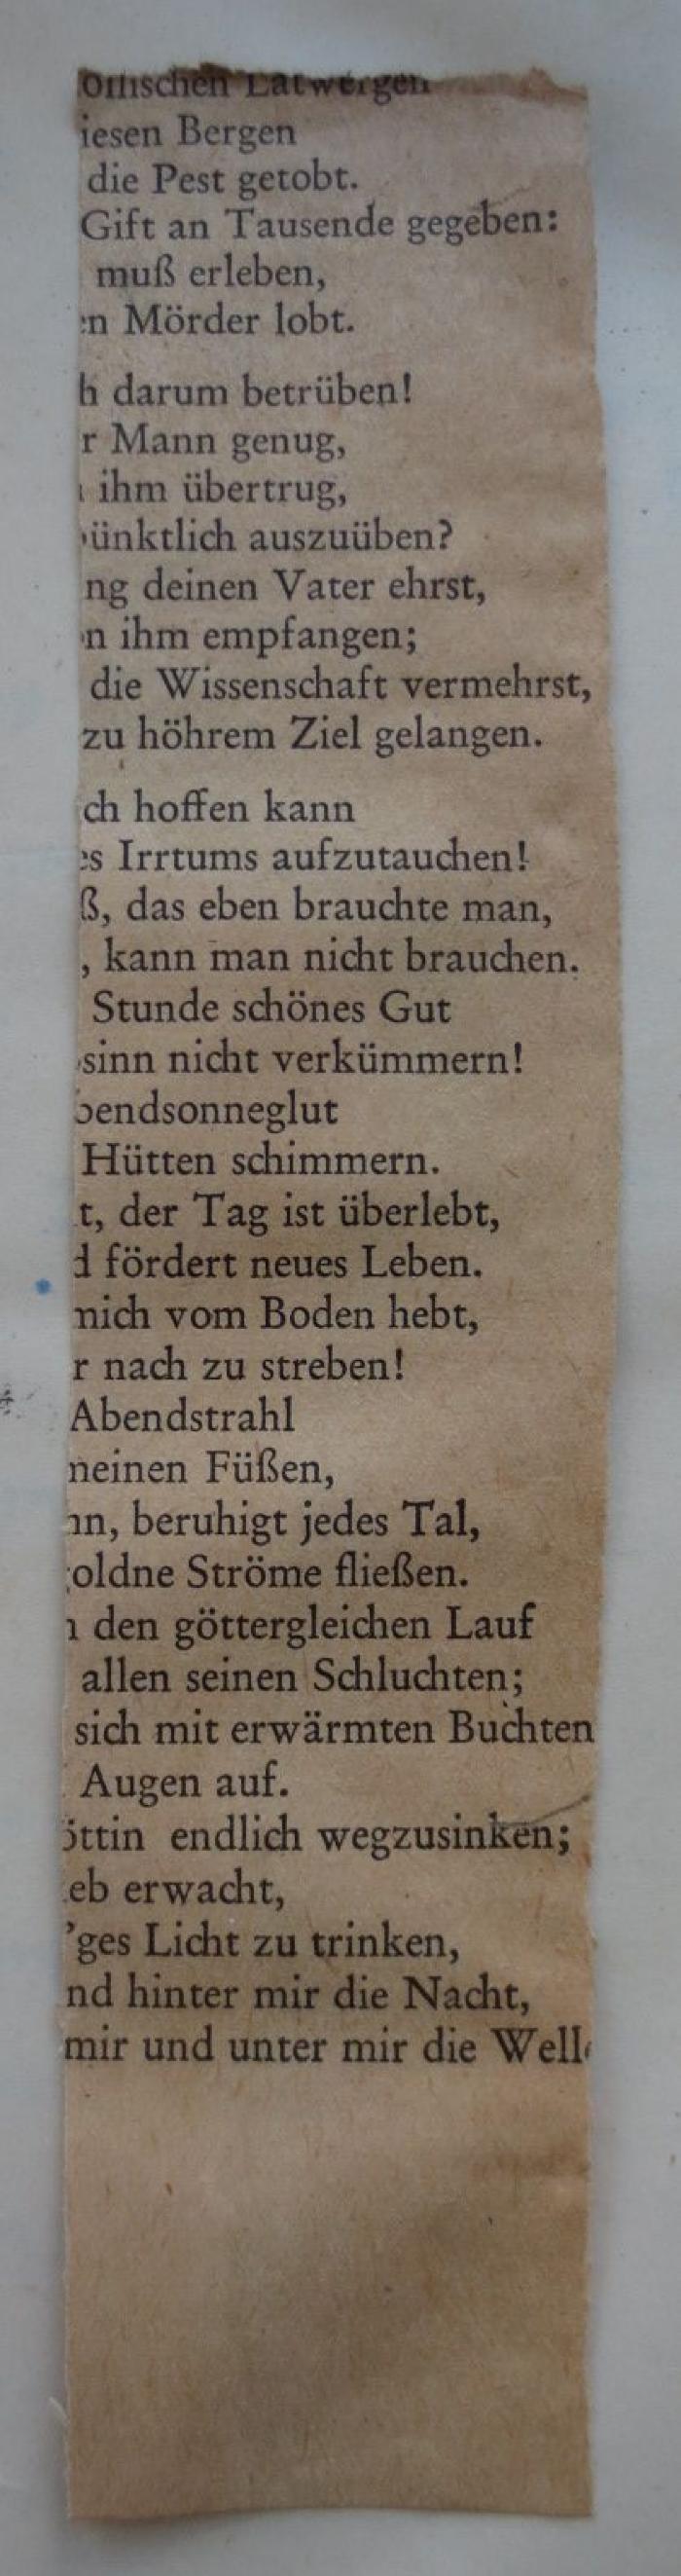  .ספר: חדושי הריט"בא
[= Die Neuerungen Ritvas] (1868);- (Kahn, Moses), Papier: Lesezeichen. 